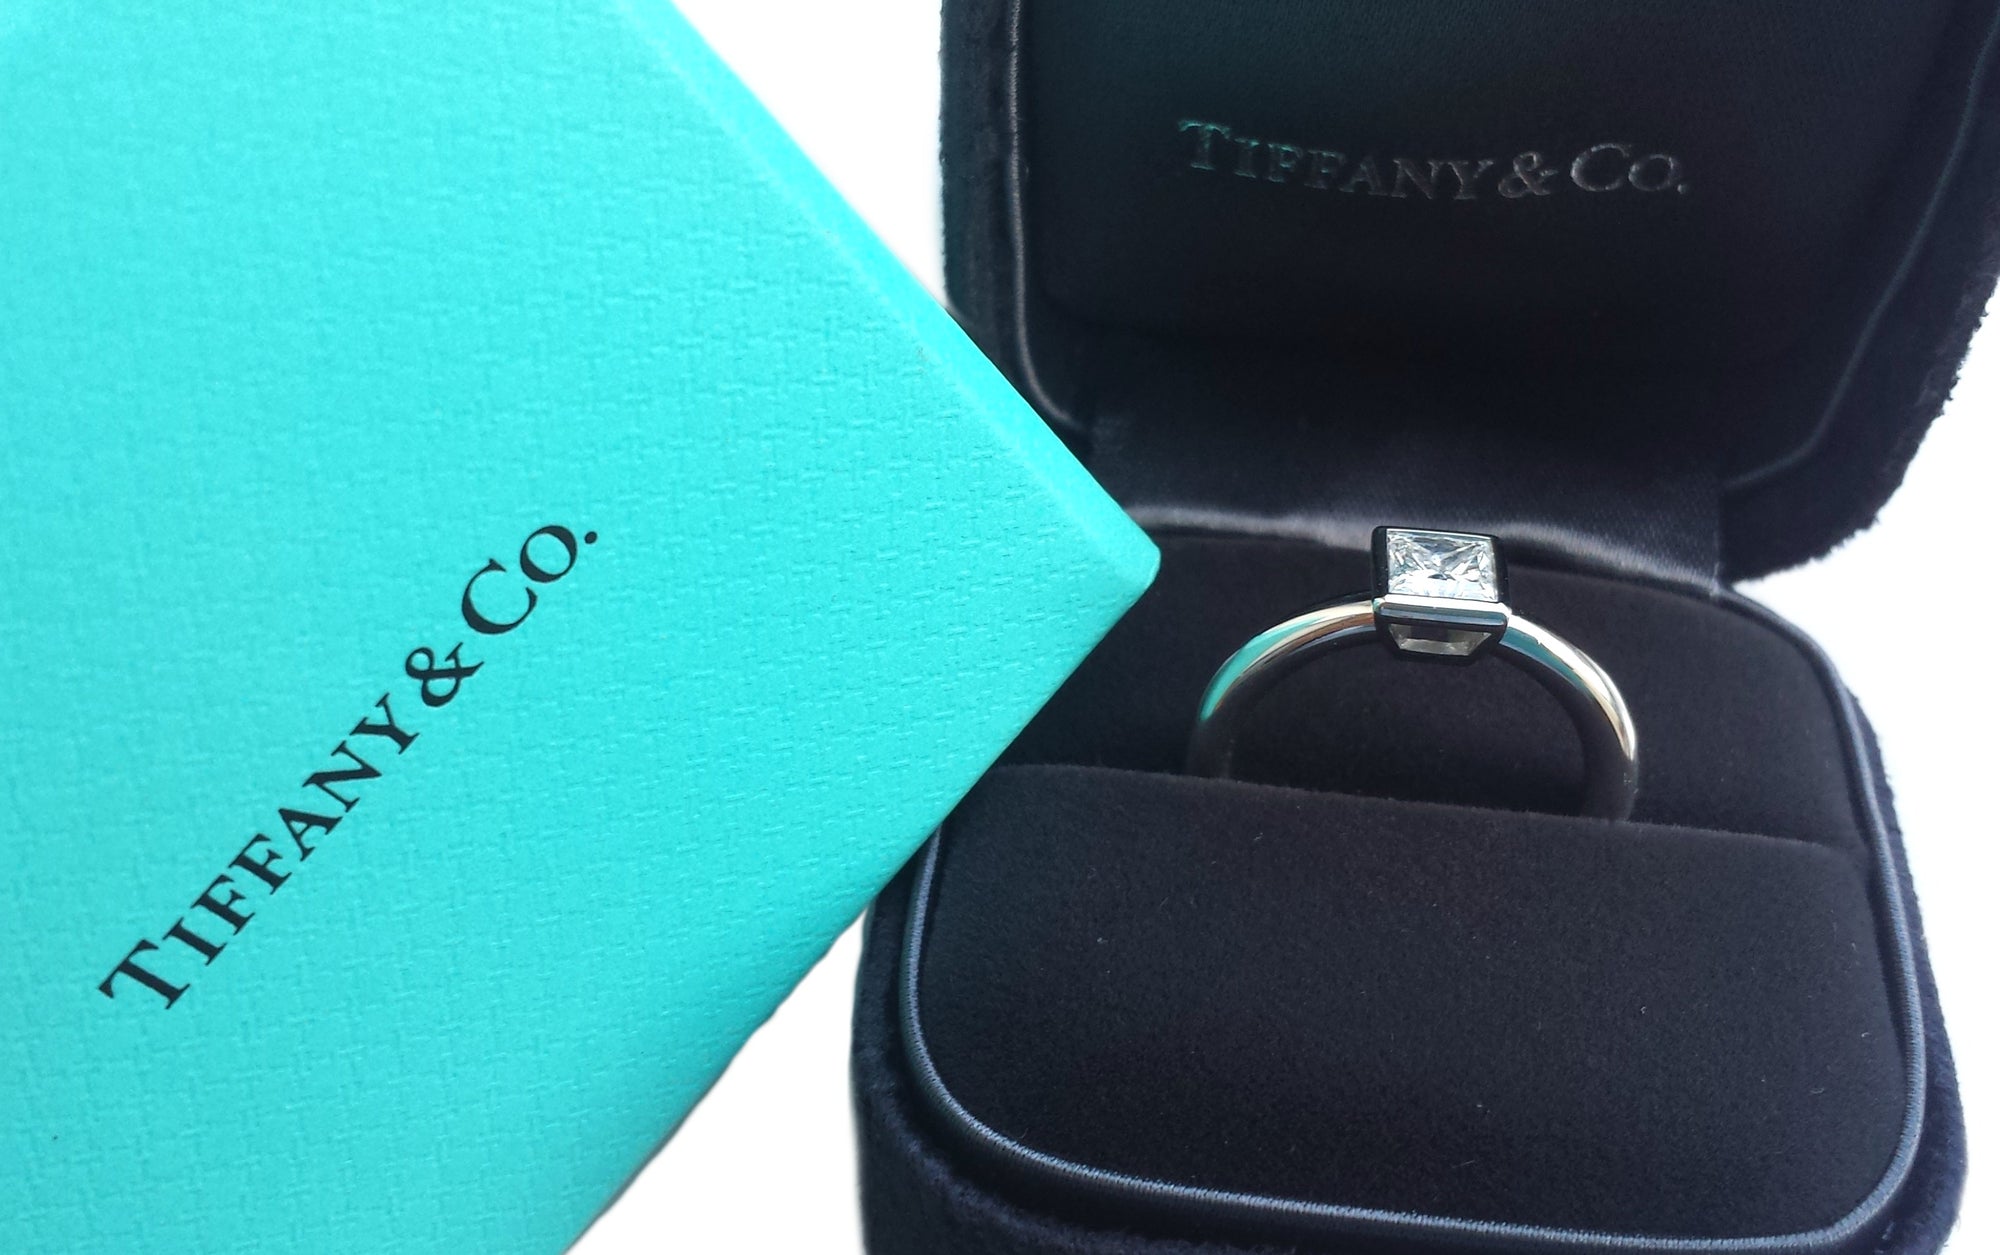 Tiffany & Co. 0.59ct E/VS1 Bezet Set Princess Cut Diamond Engagement Ring